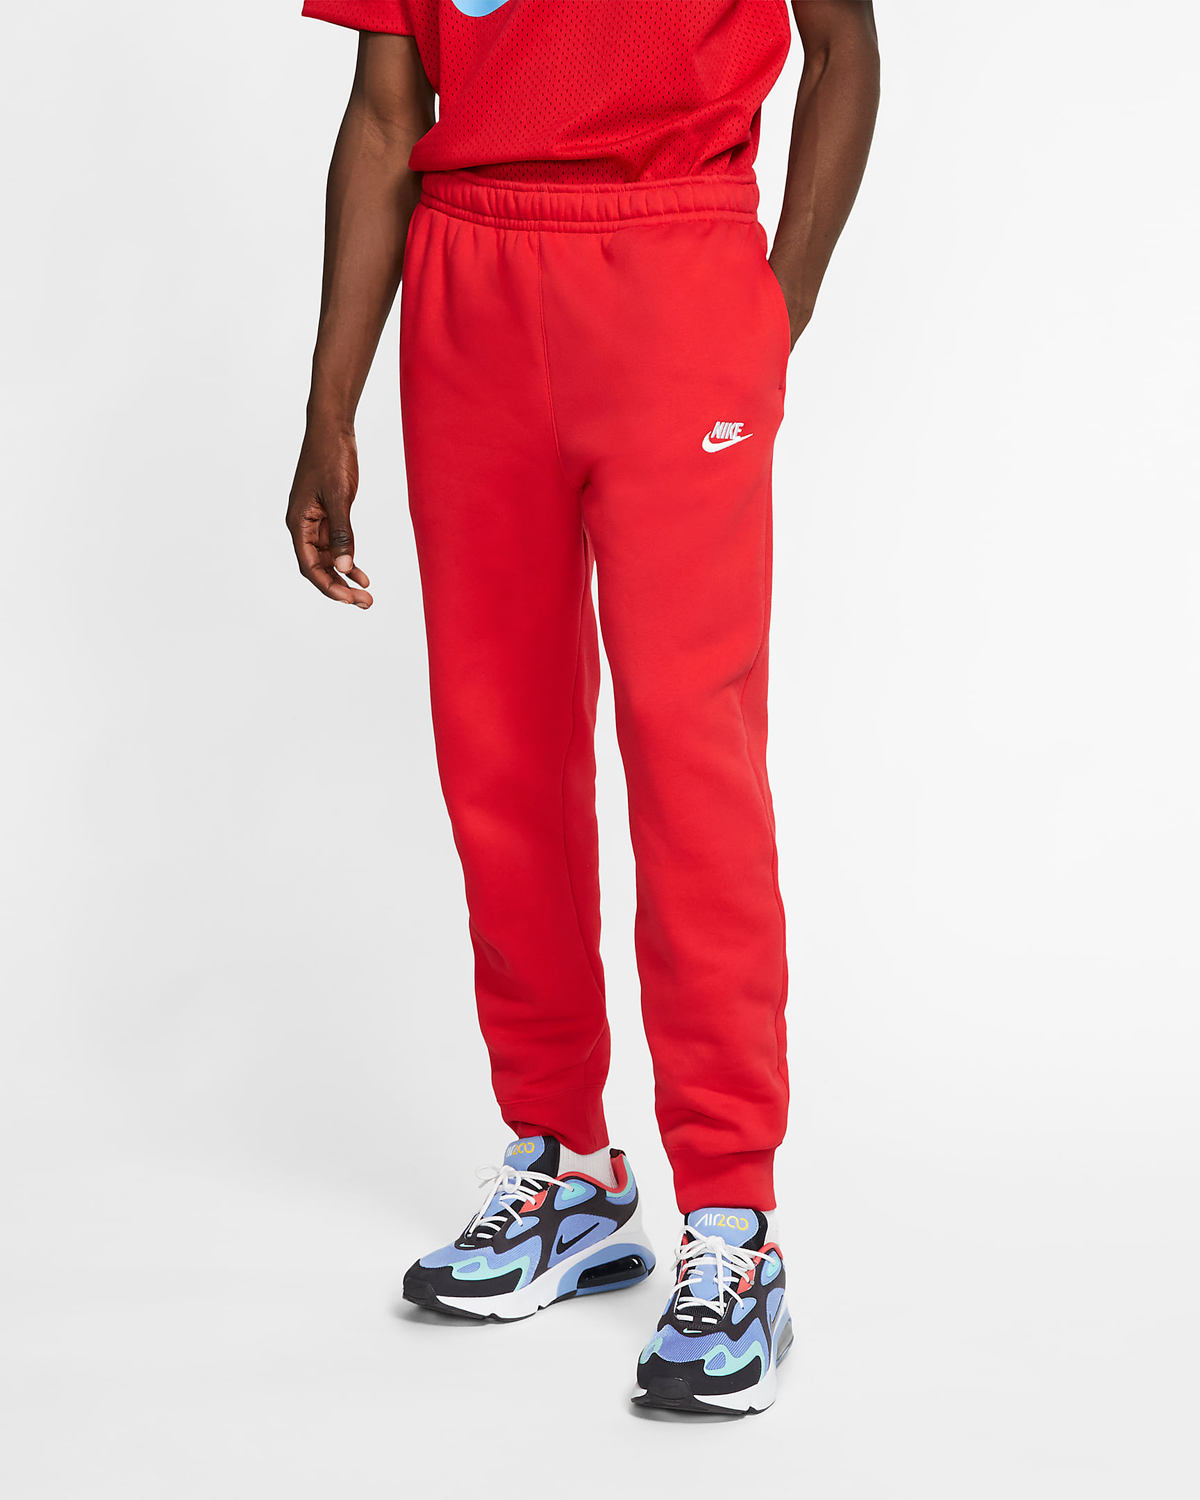 Nike Air Max 90 Icons Silver Bullet Shirts Shorts Outfits